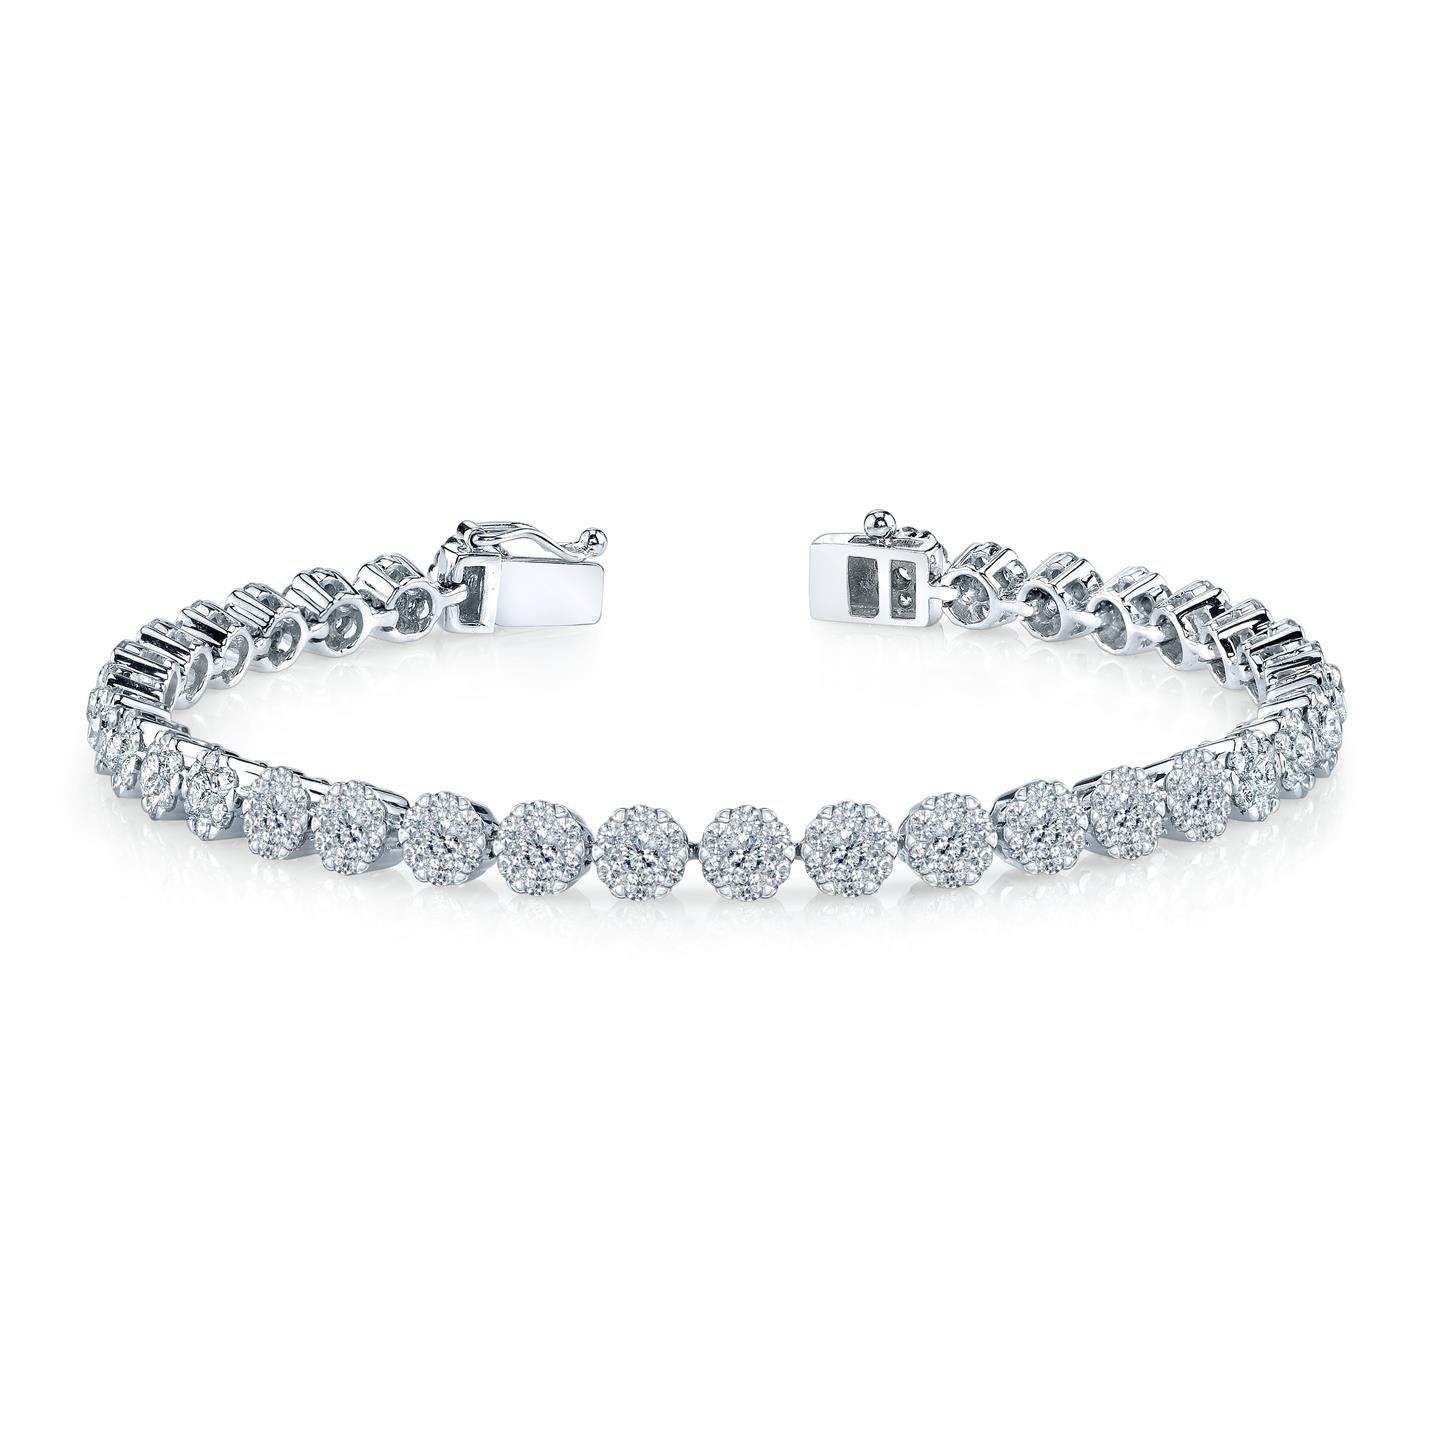 Bracelet Femme Véritable Diamants Taille Brillant 6 Carats WG 14K